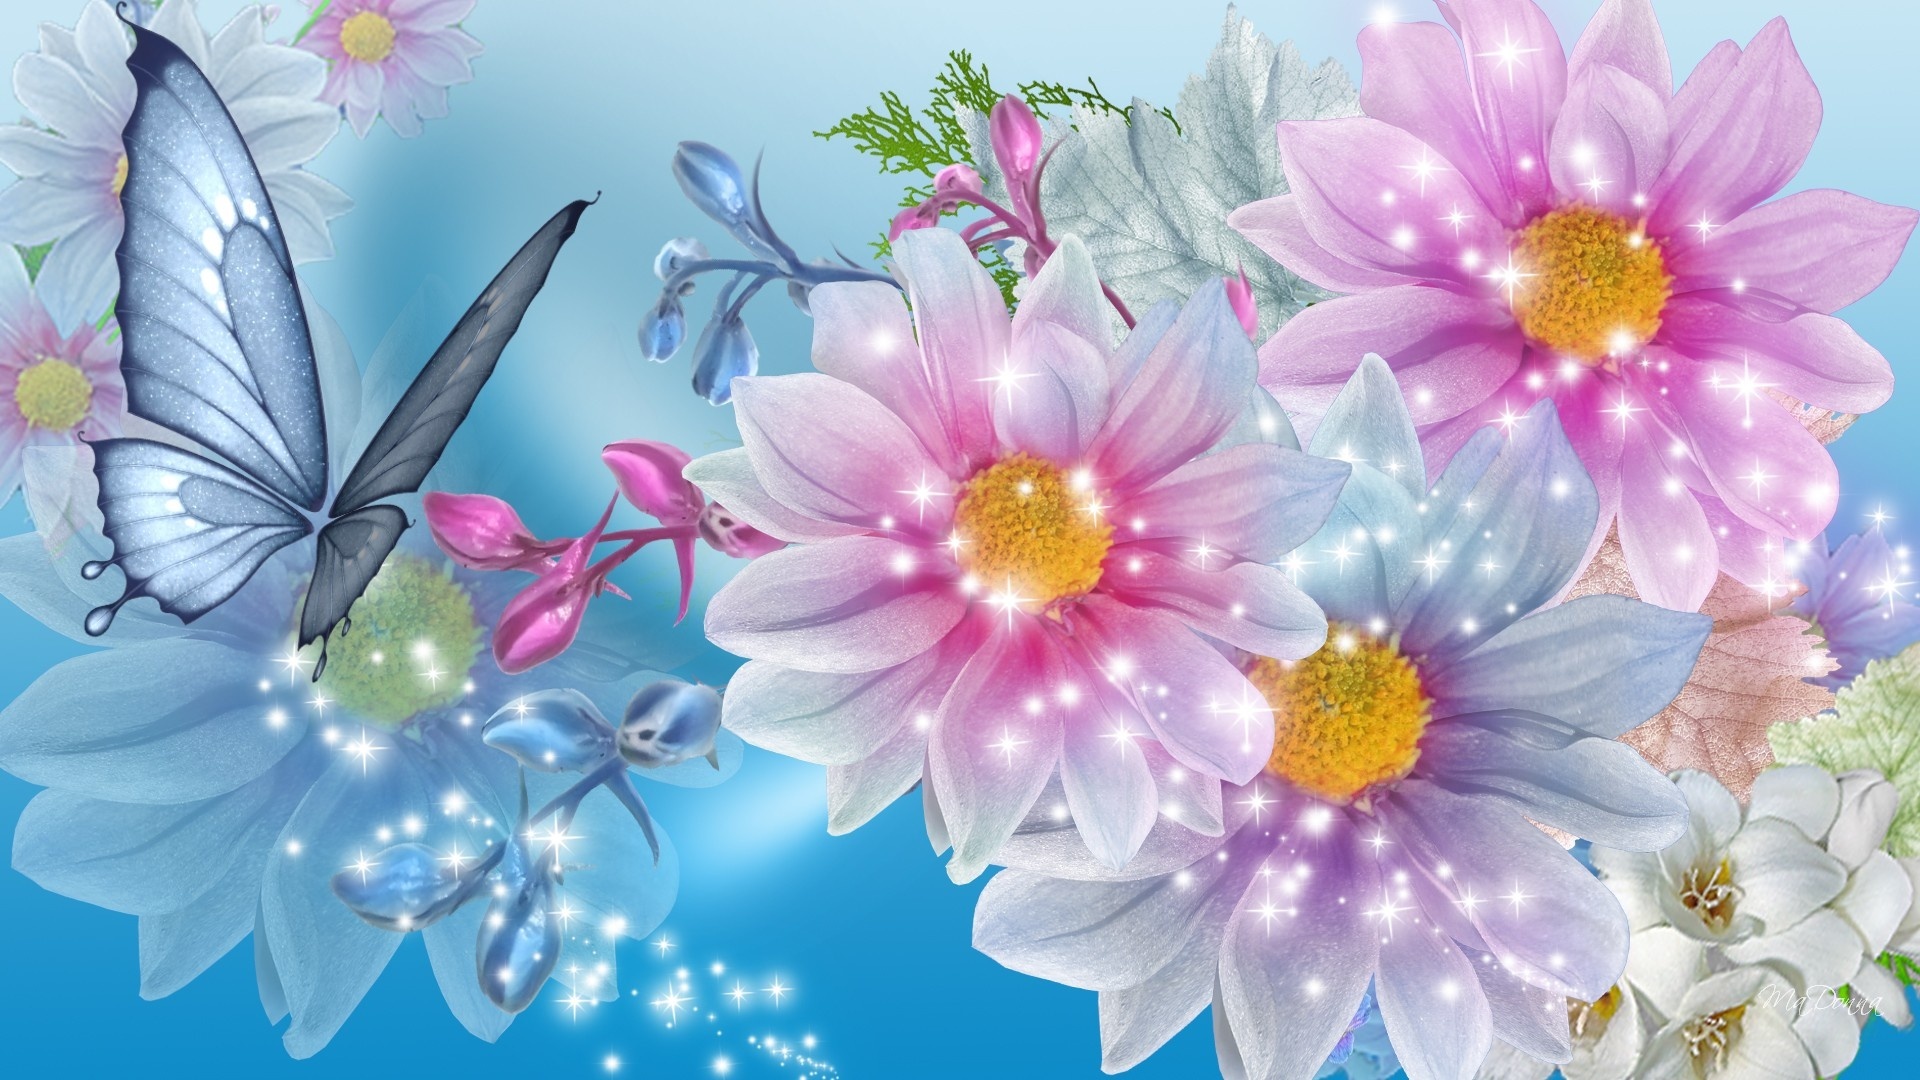 hd flower desktop wallpapers